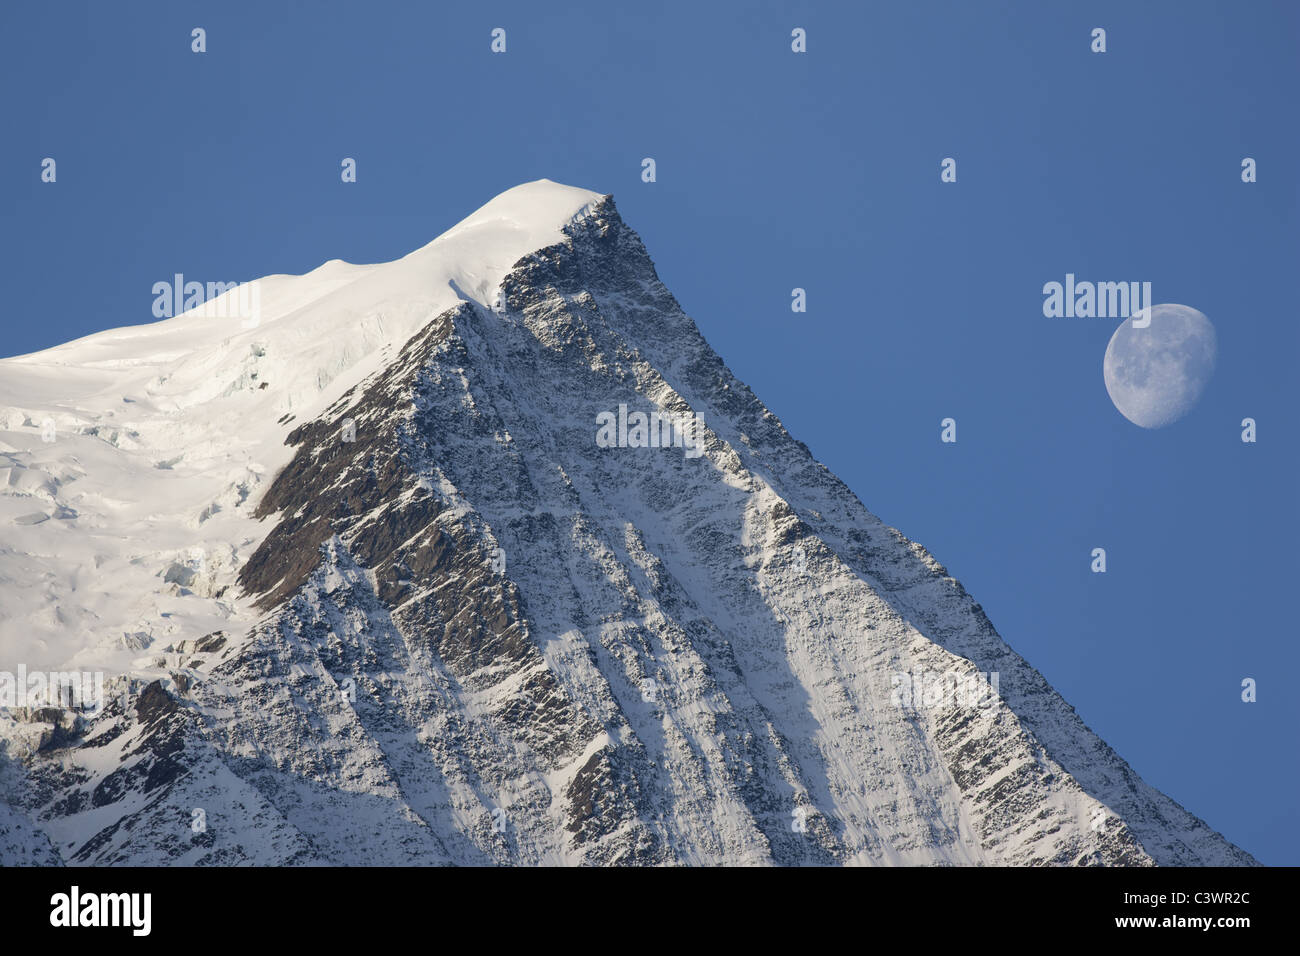 Aiguille du Gouter; ein 3786 Meter hoher Gipfel im Mont-Blanc-Massiv. Szene, die mit einem 400-mm-Objektiv aufgenommen wurde (Mond nicht hinzugefügt). Chamonix, Haute-Savoie, Frankreich. Stockfoto